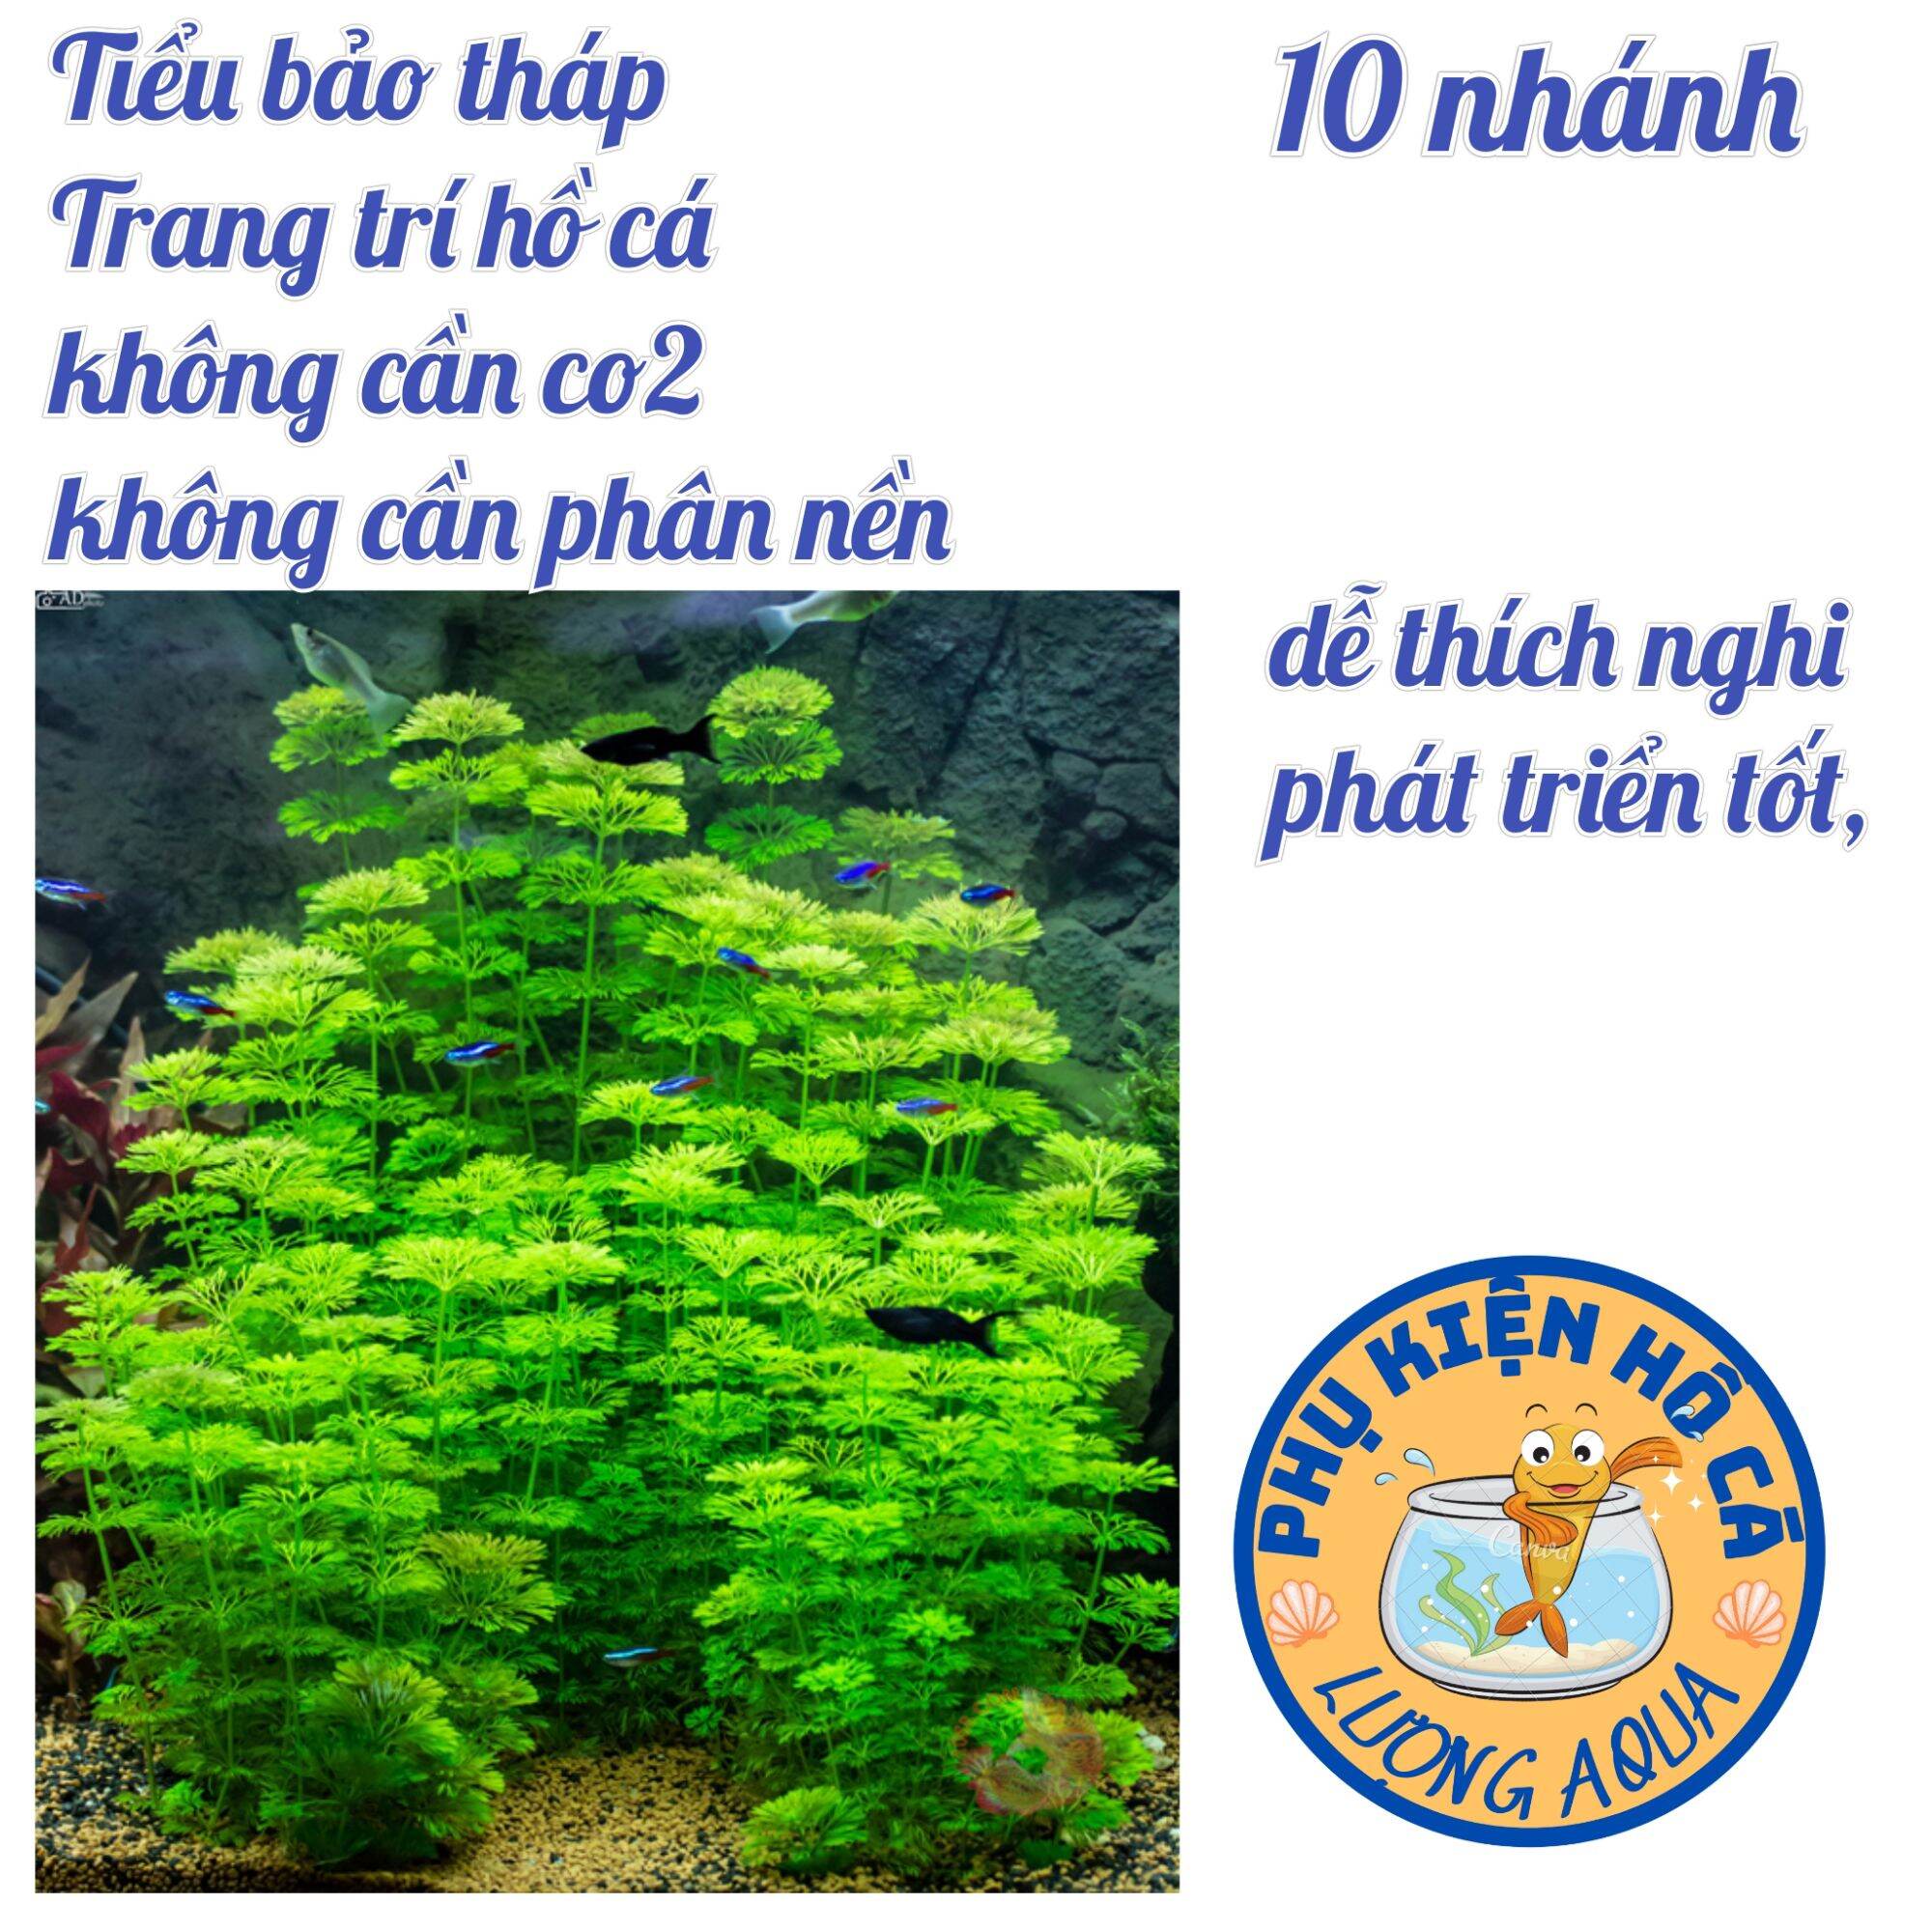 10 nhánh cây thủy sinh Tiểu bảo tháp thumbnail